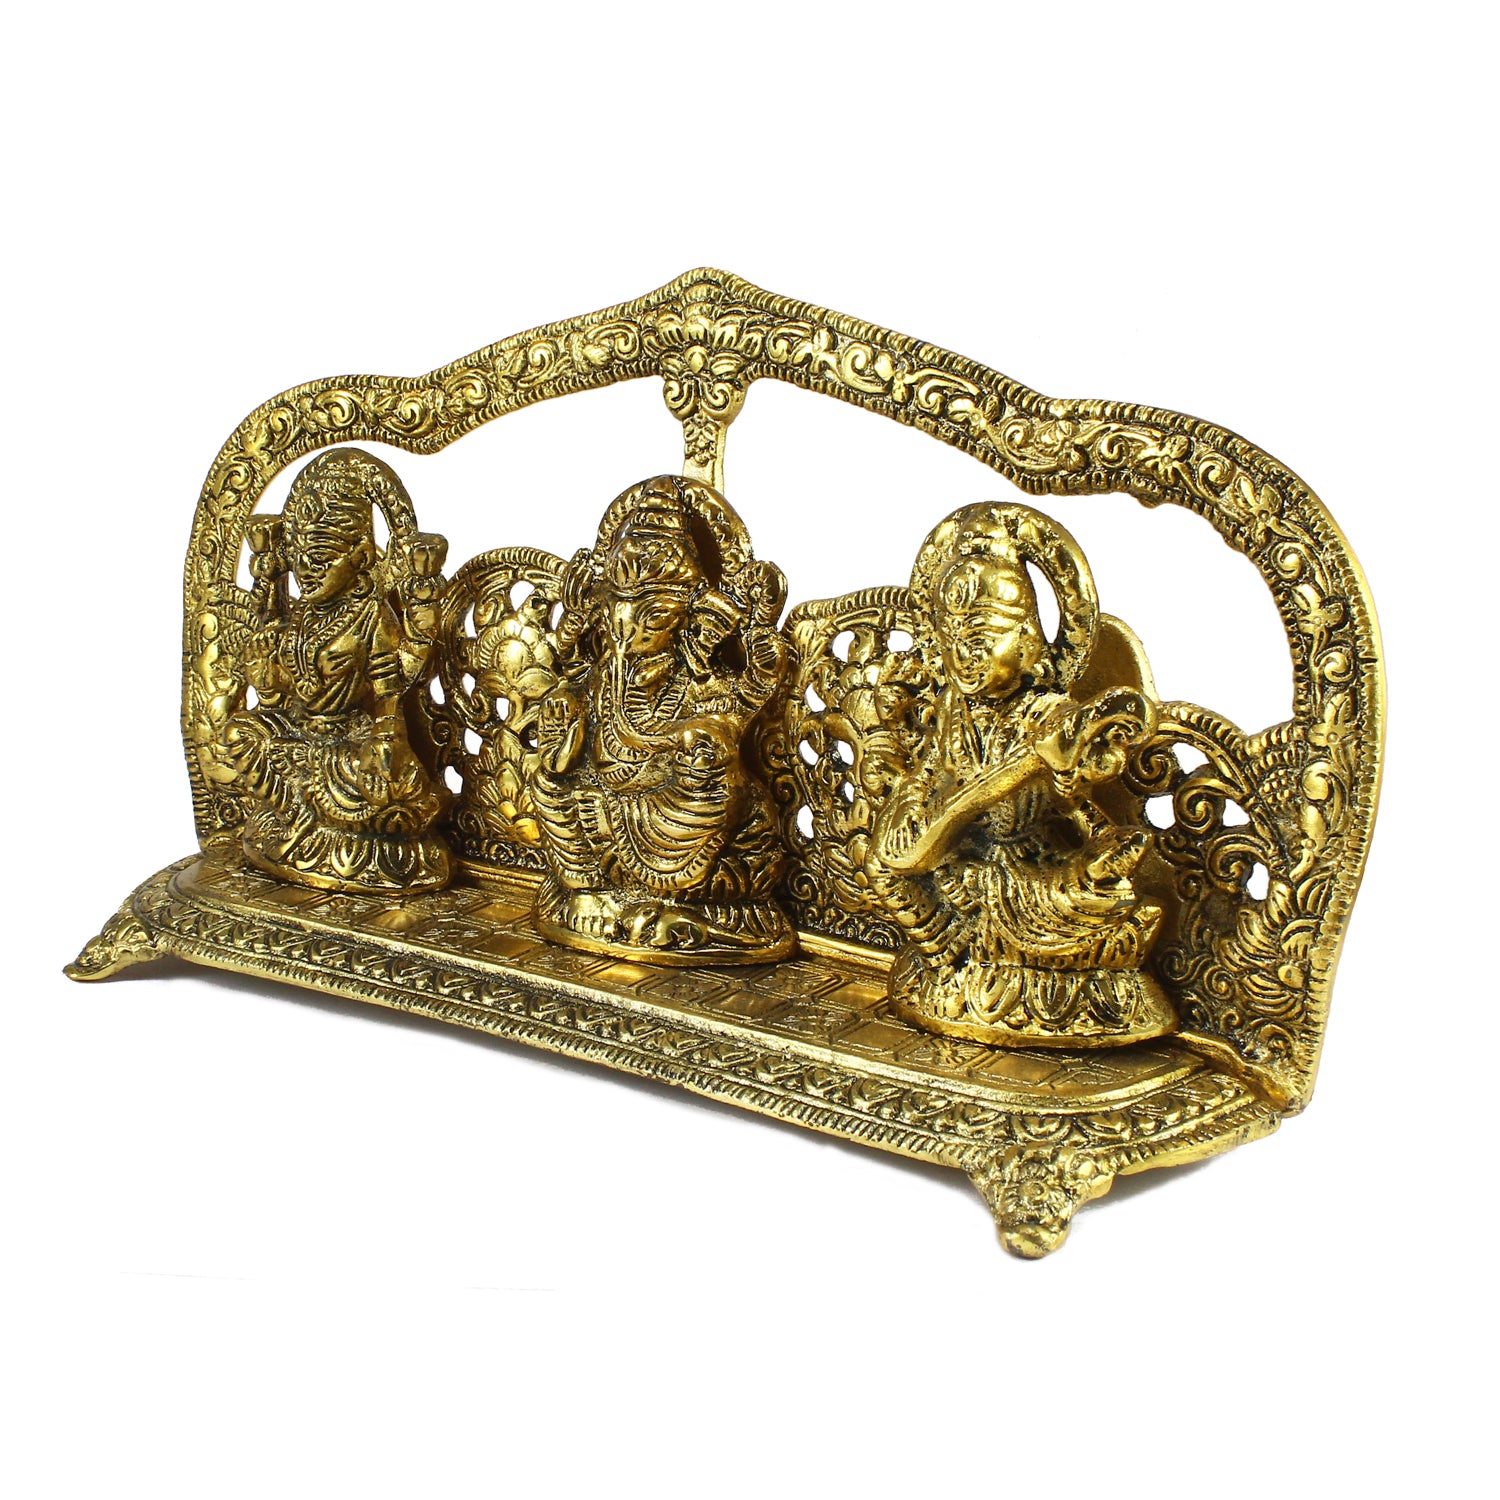 Golden Laxmi Ganesha Saraswati Murtis Religious Idols 4